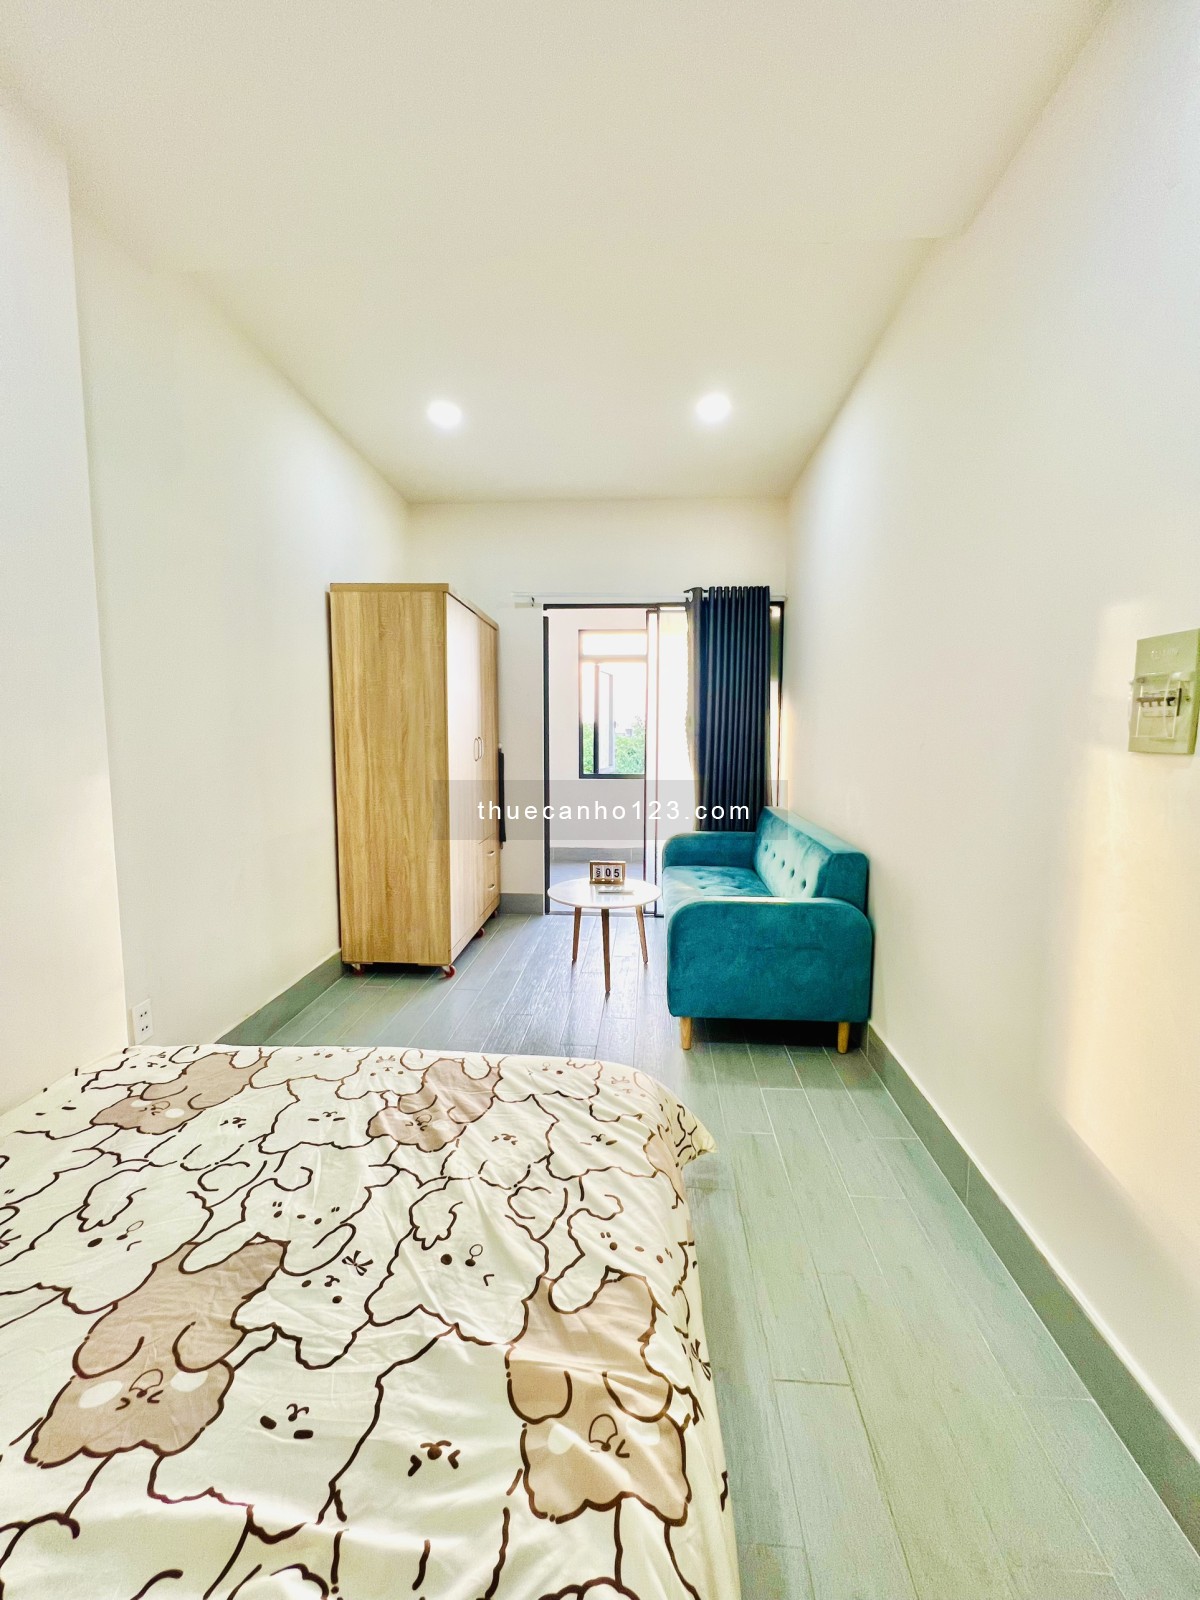 Cho thuê căn hộ dịch vụ phòng và nội thất mới 100% gần Đỗ Xuân Hợp